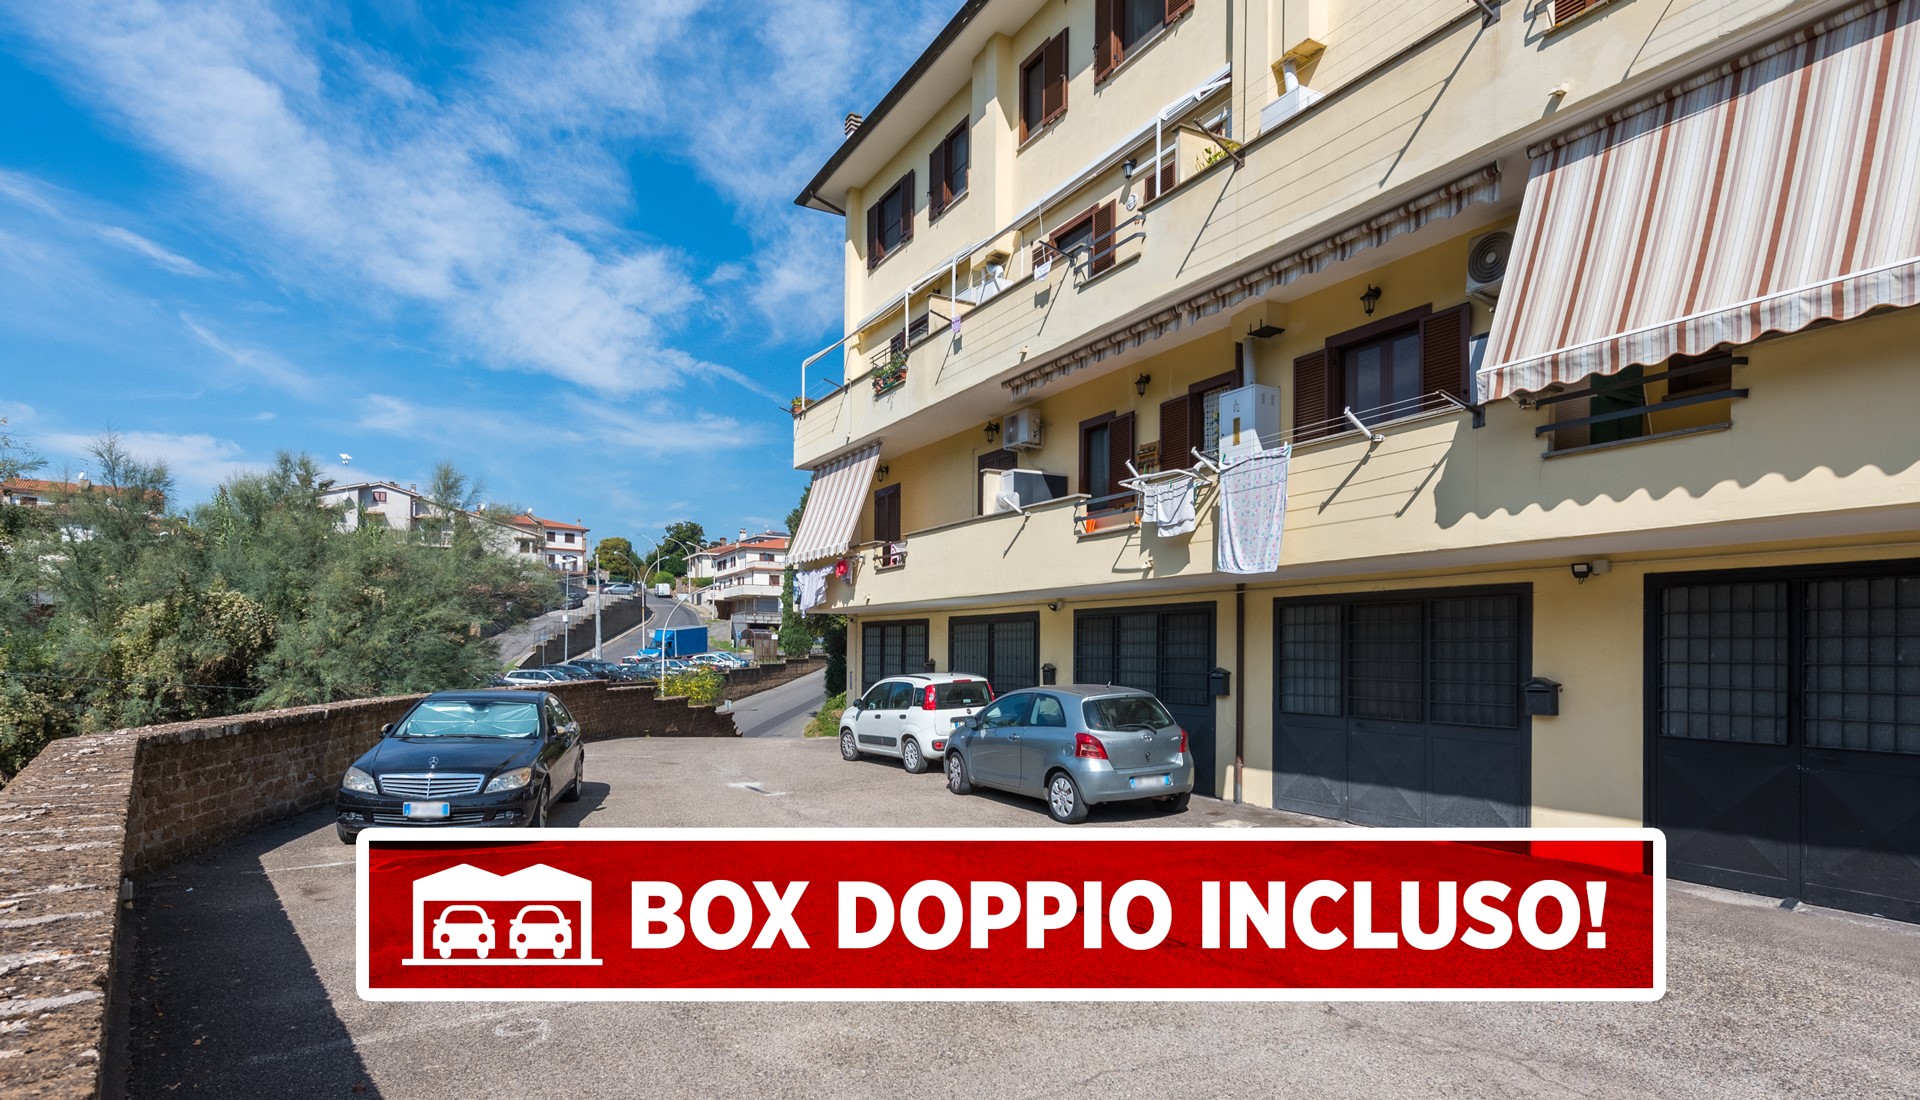 SUTRI (Viterbo) – Appartamento su due livelli con box doppio